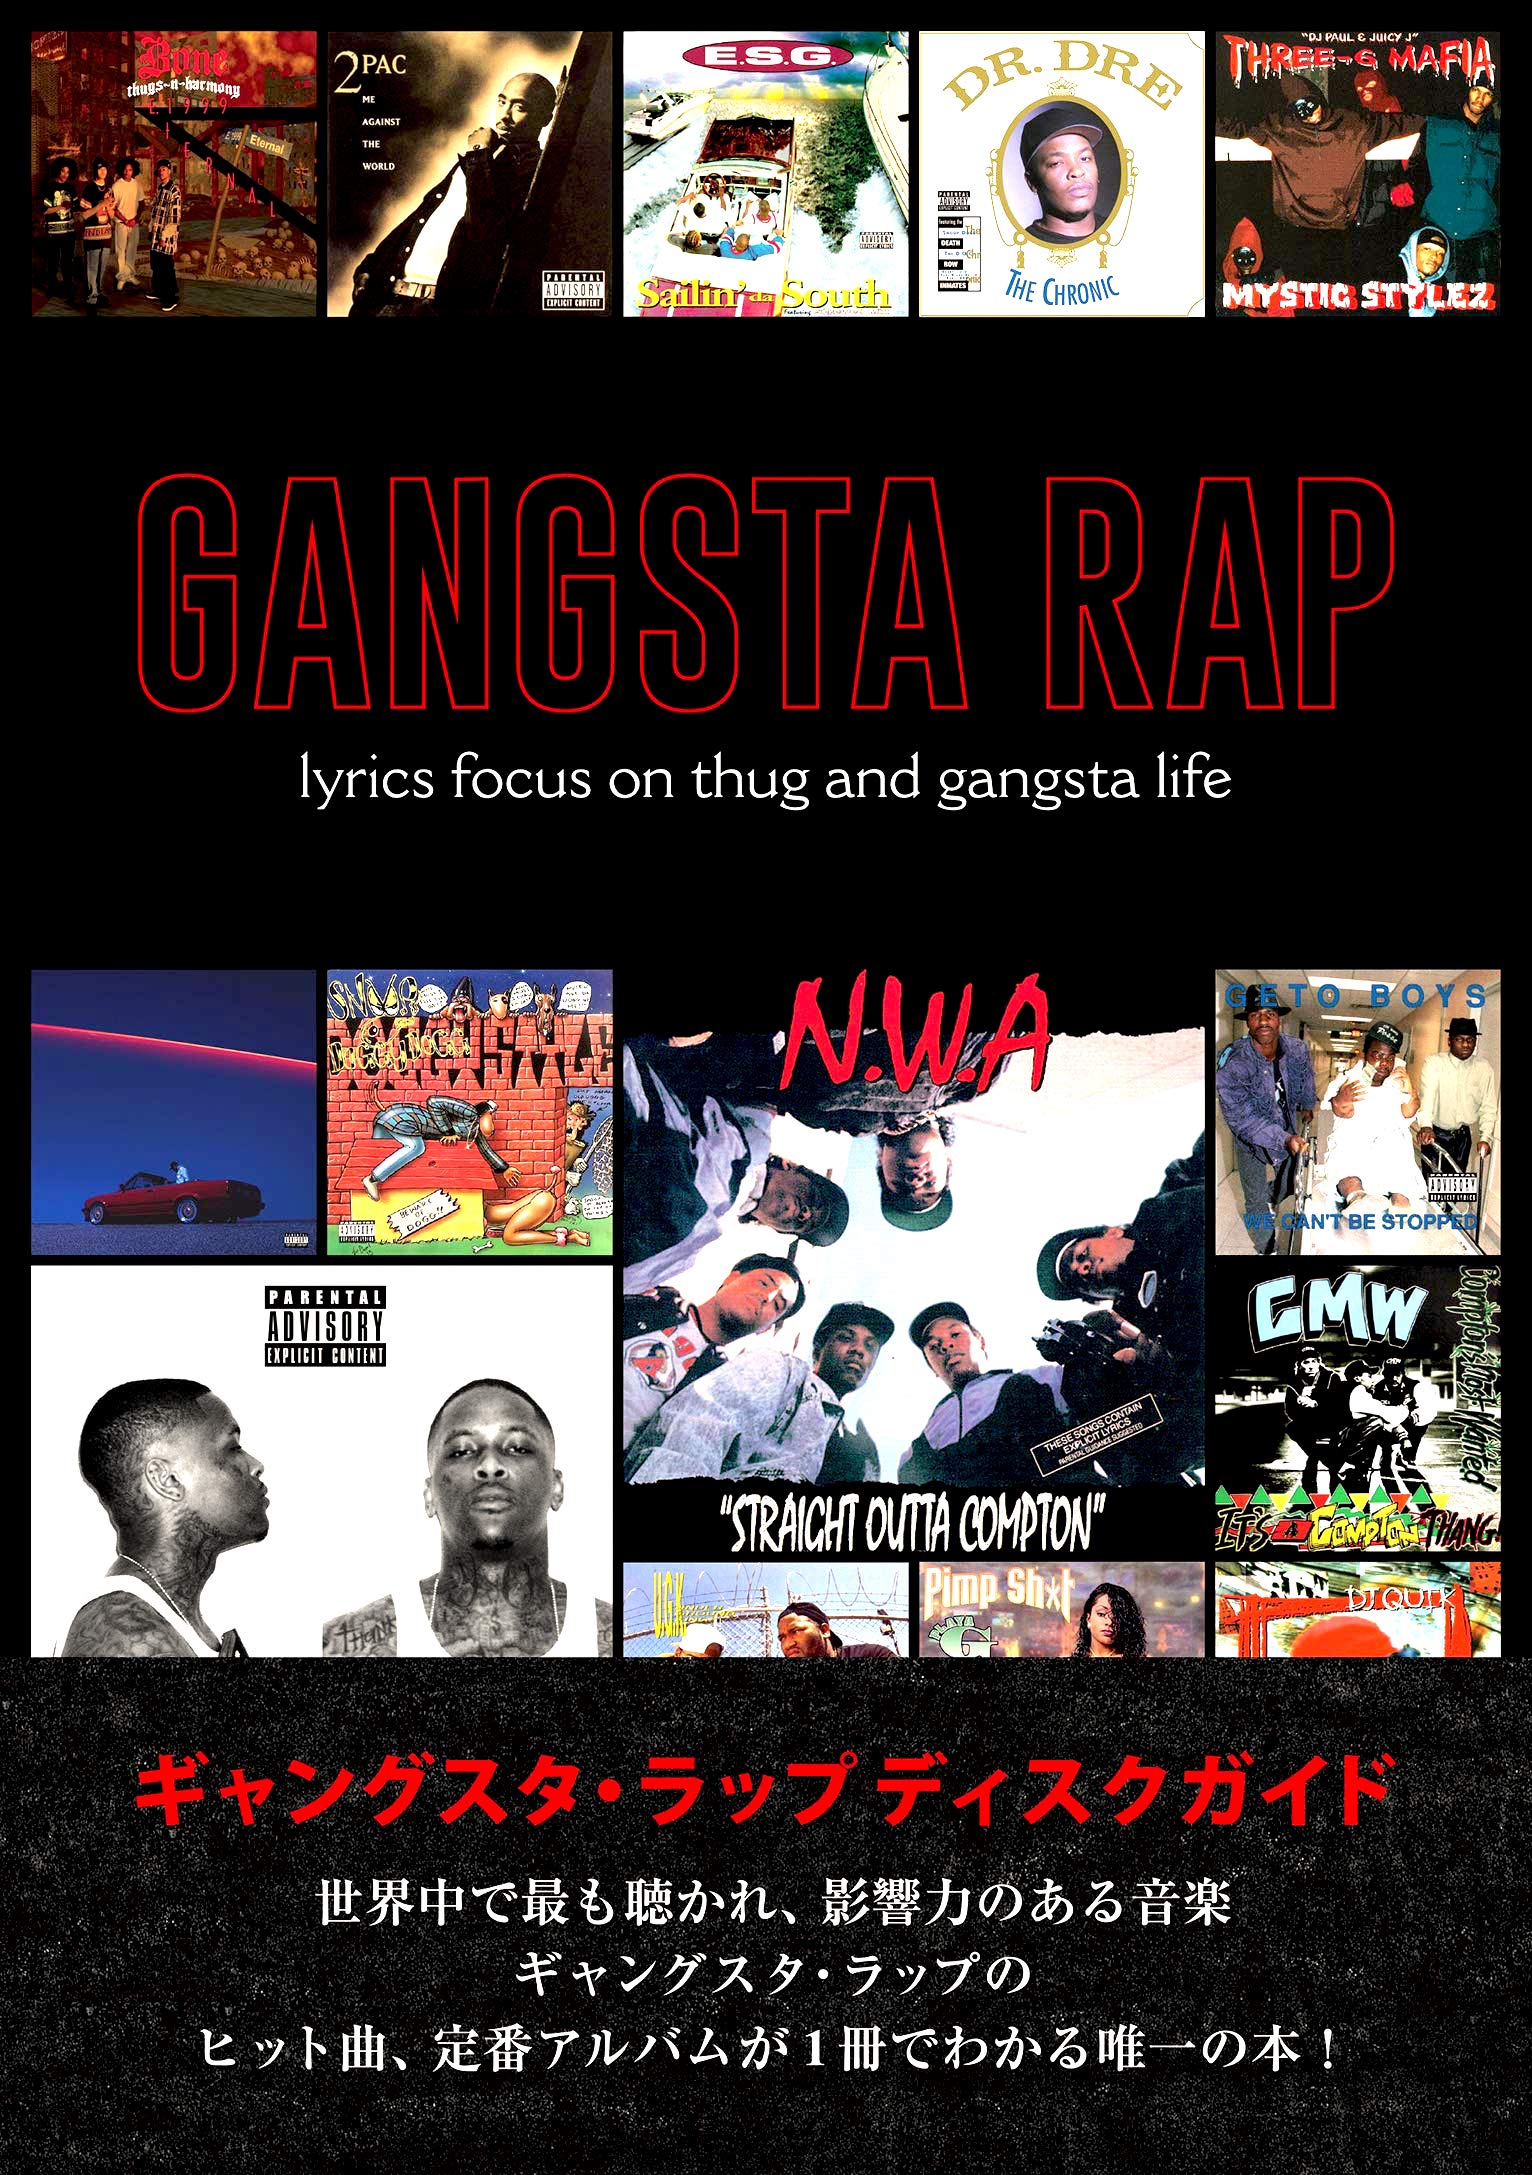 リアル G-RAP 16枚セット SOUND DJ G-FUNK RAP GANGSTA 洋楽